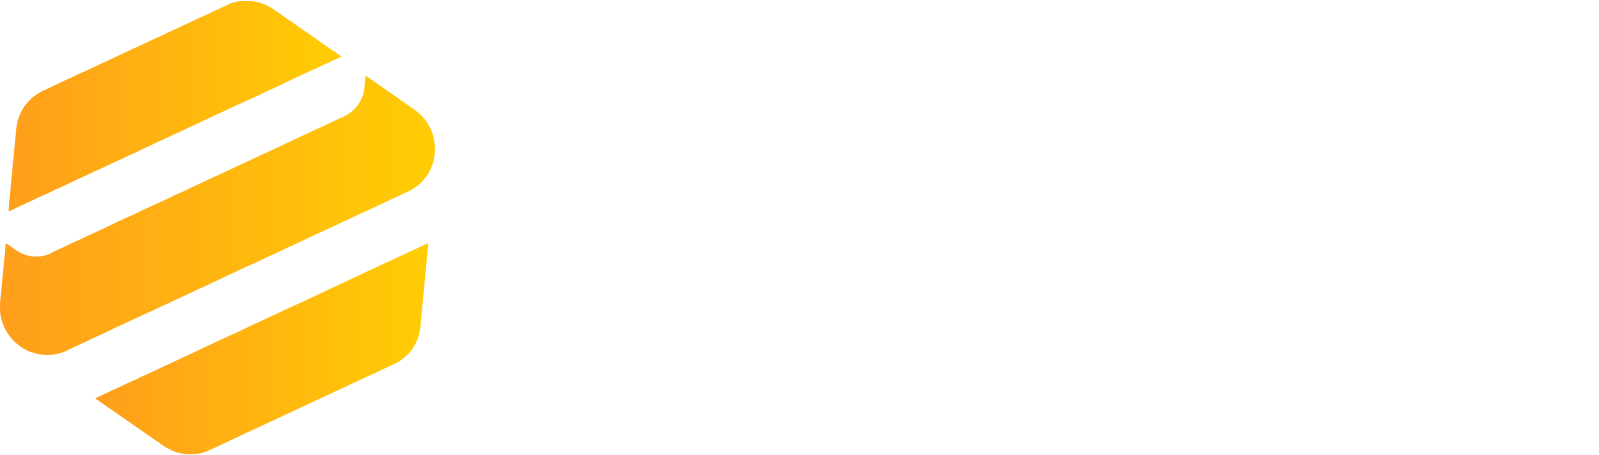 Endo International
 logo large for dark backgrounds (transparent PNG)